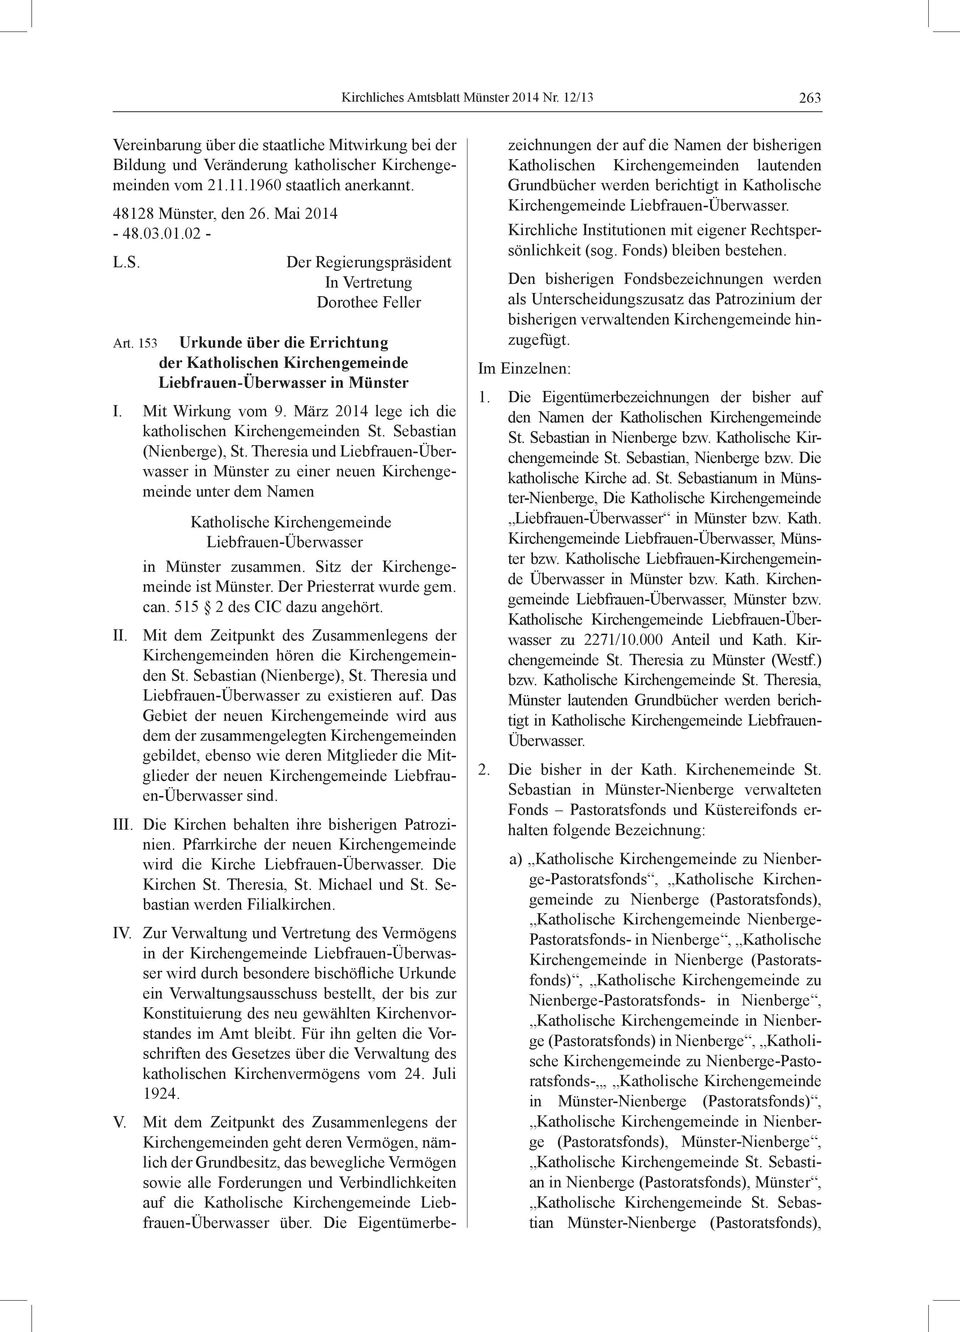 153 Urkunde über die Errichtung der Katholischen Kirchengemeinde Liebfrauen-Überwasser in Münster I. Mit Wirkung vom 9. März 2014 lege ich die katholischen Kirchengemeinden St.